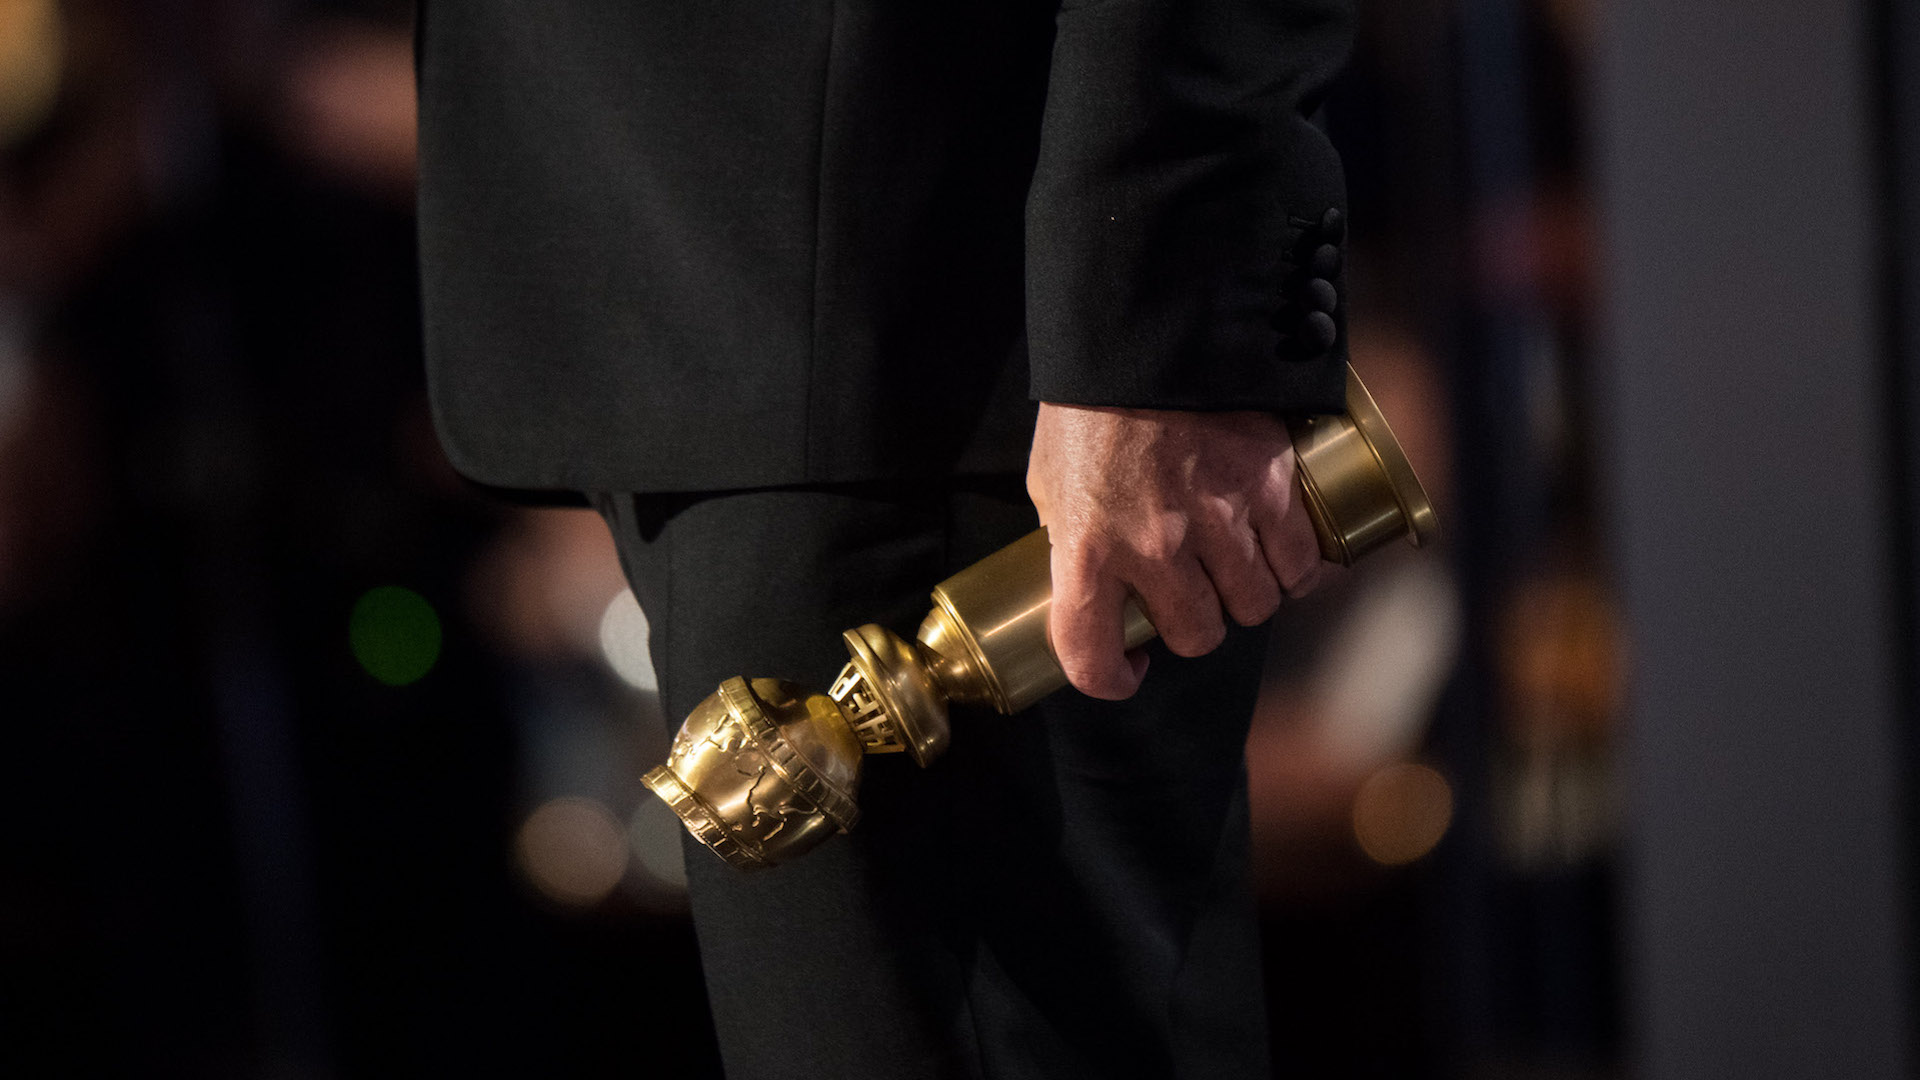 GOLDEN GLOBES 2019: Alfonso Cuarón hält eine Trophäe in der Hand.